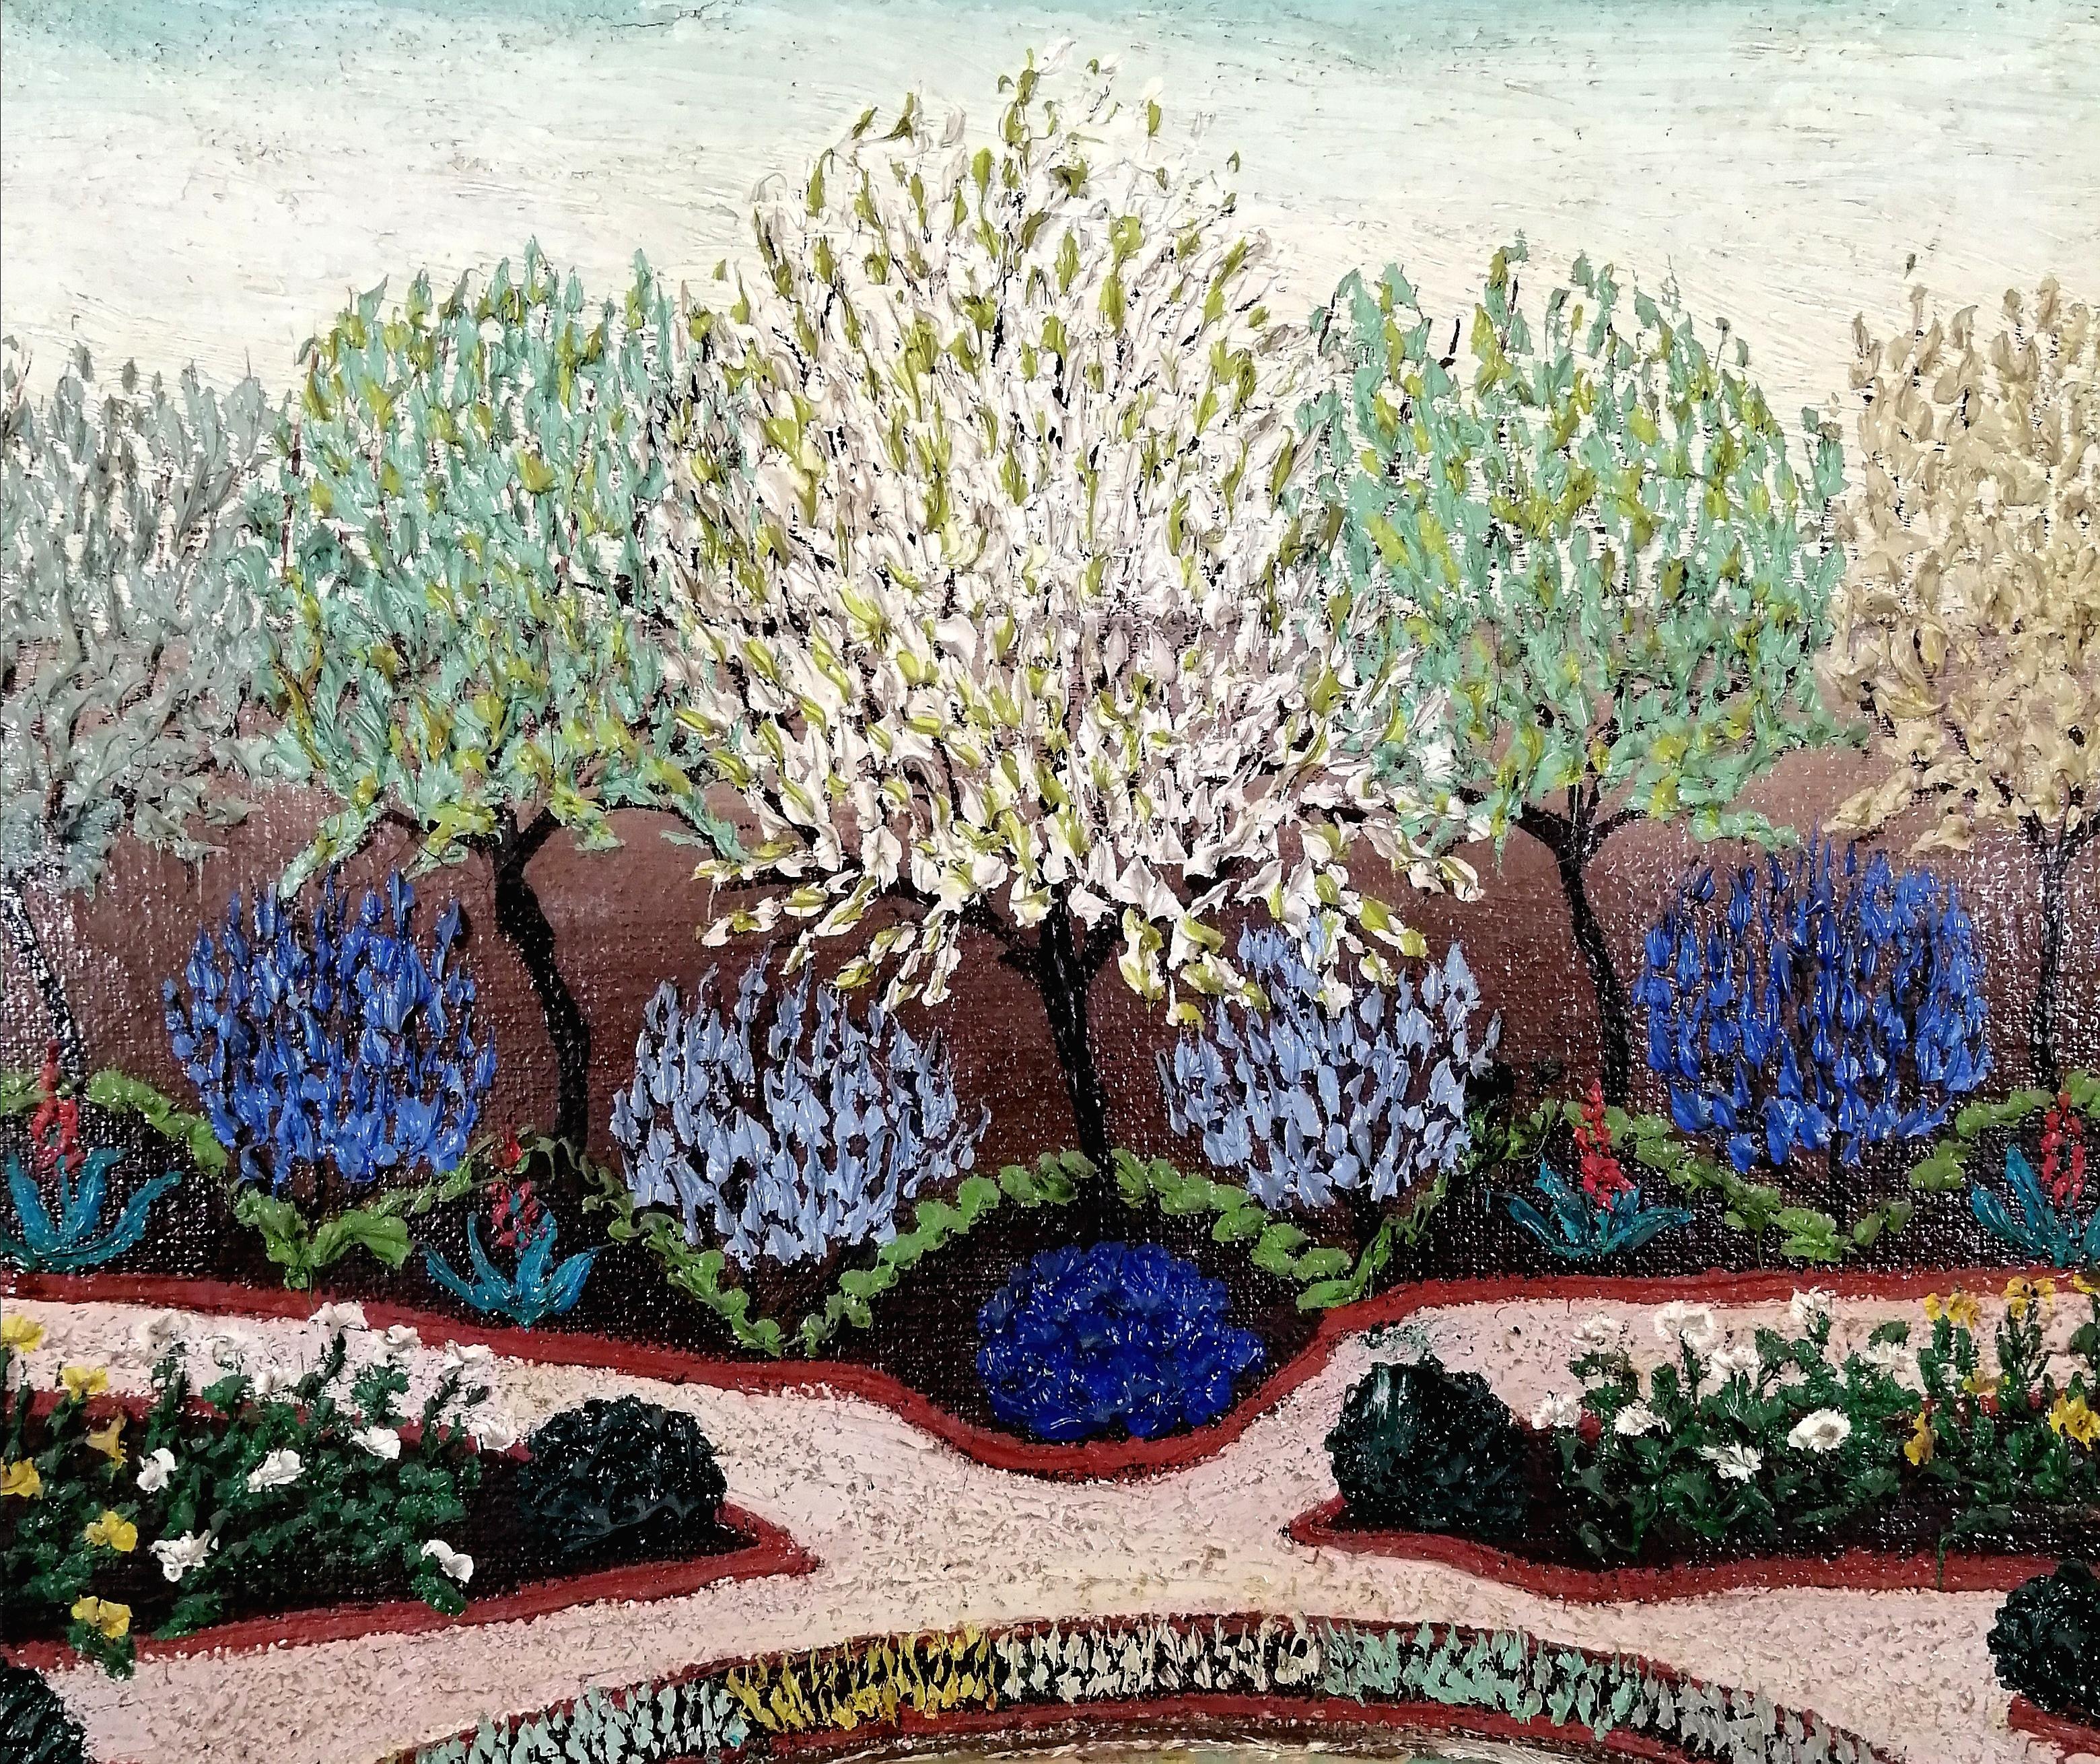 Ein sehr schönes Ölgemälde des französischen Künstlers Jean Busquets aus den 1930er Jahren, das den Garten des Parc de Saint-Cloud am Rande von Paris zeigt. Hervorragendes frühes Beispiel für französische Naïf-Malerei. Bezeichnet mit dem Titel auf